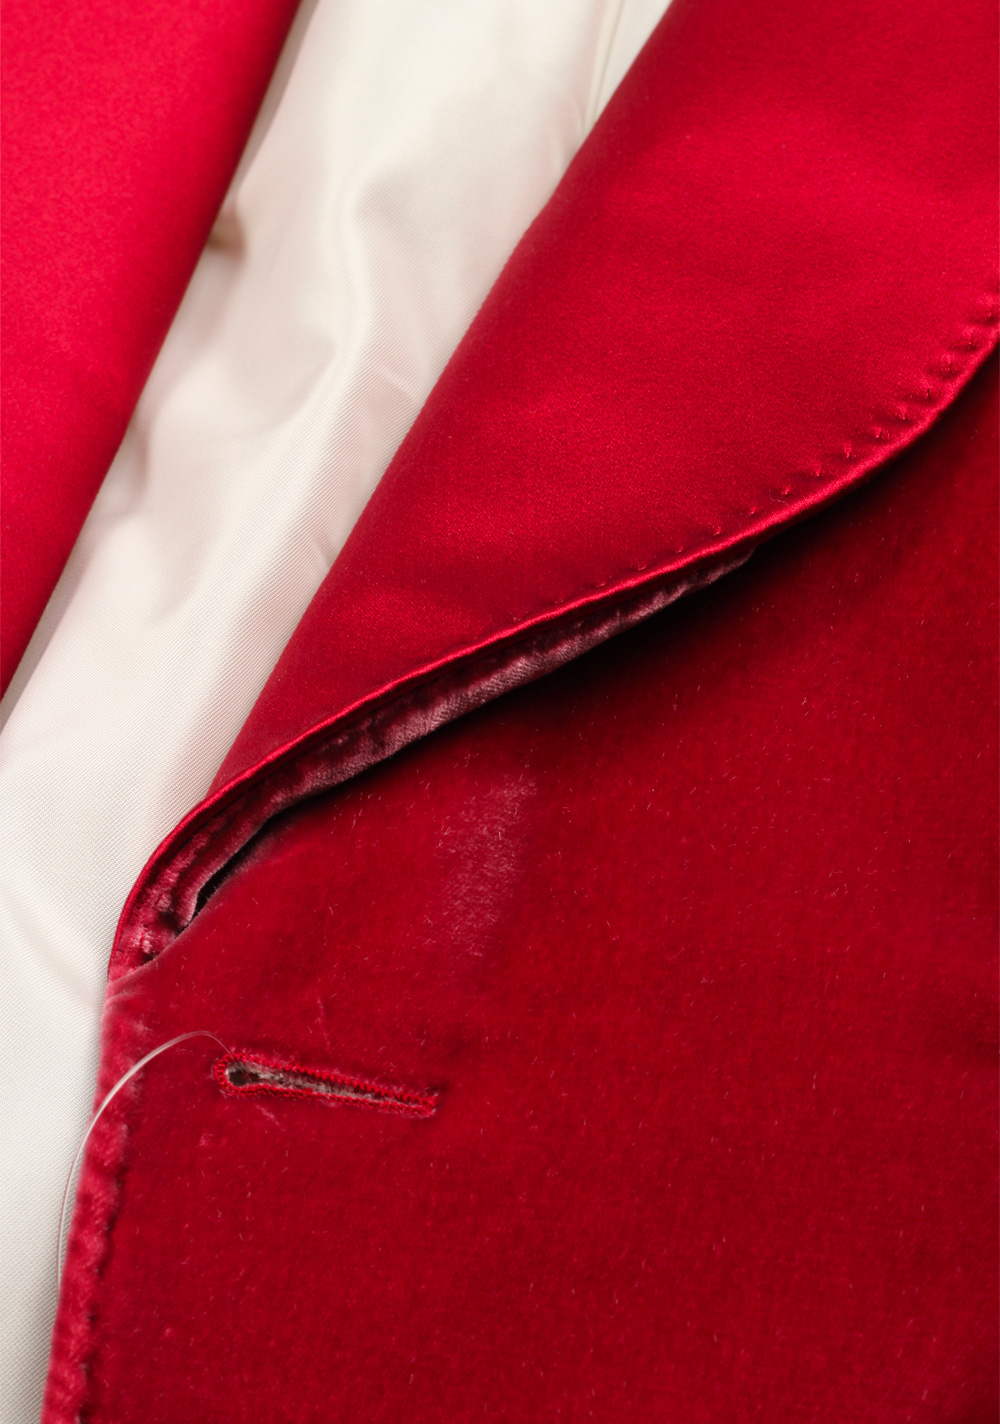 TOM FORD Shelton Velvet Red Tuxedo Dinner Jacket Size Size 52 / 42R U.S. | Costume Limité